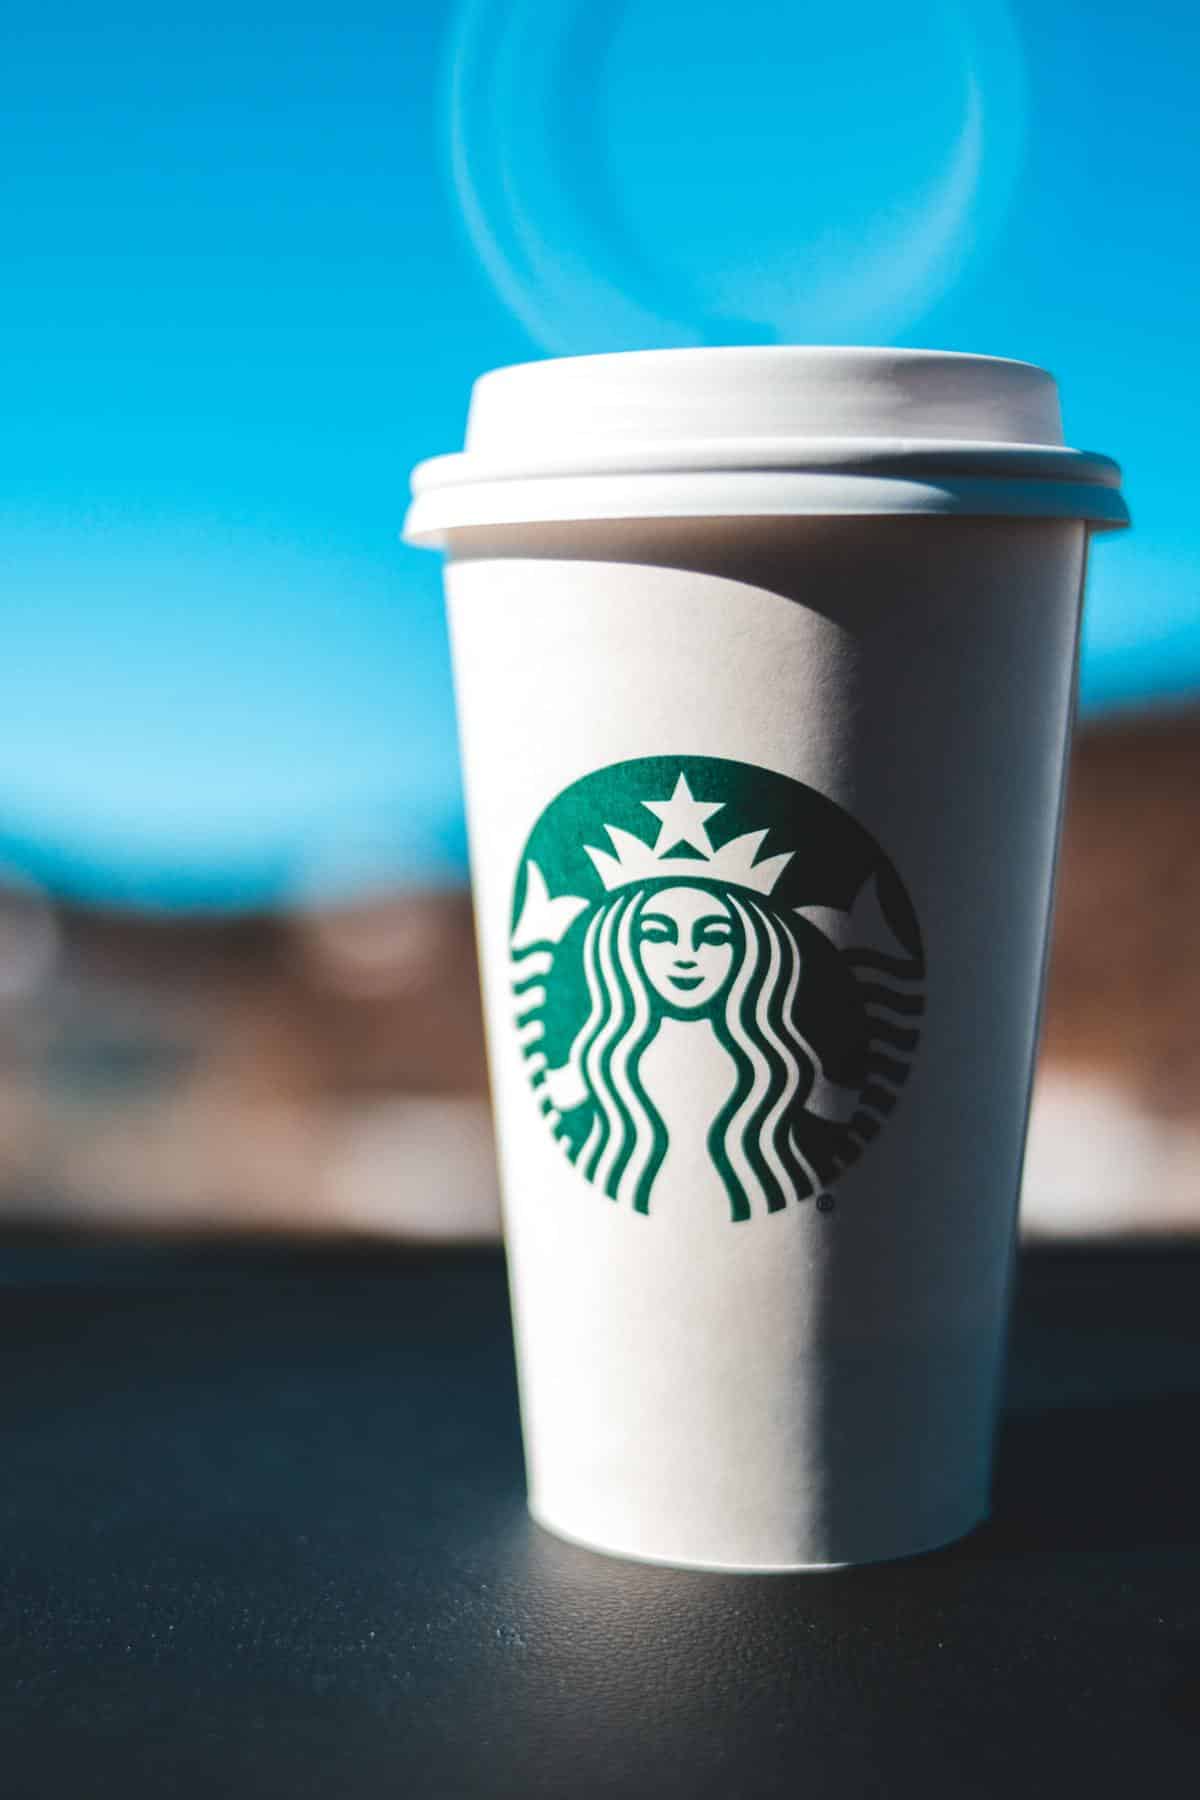 A Starbuck's to-go mug sitting on a car dash board.